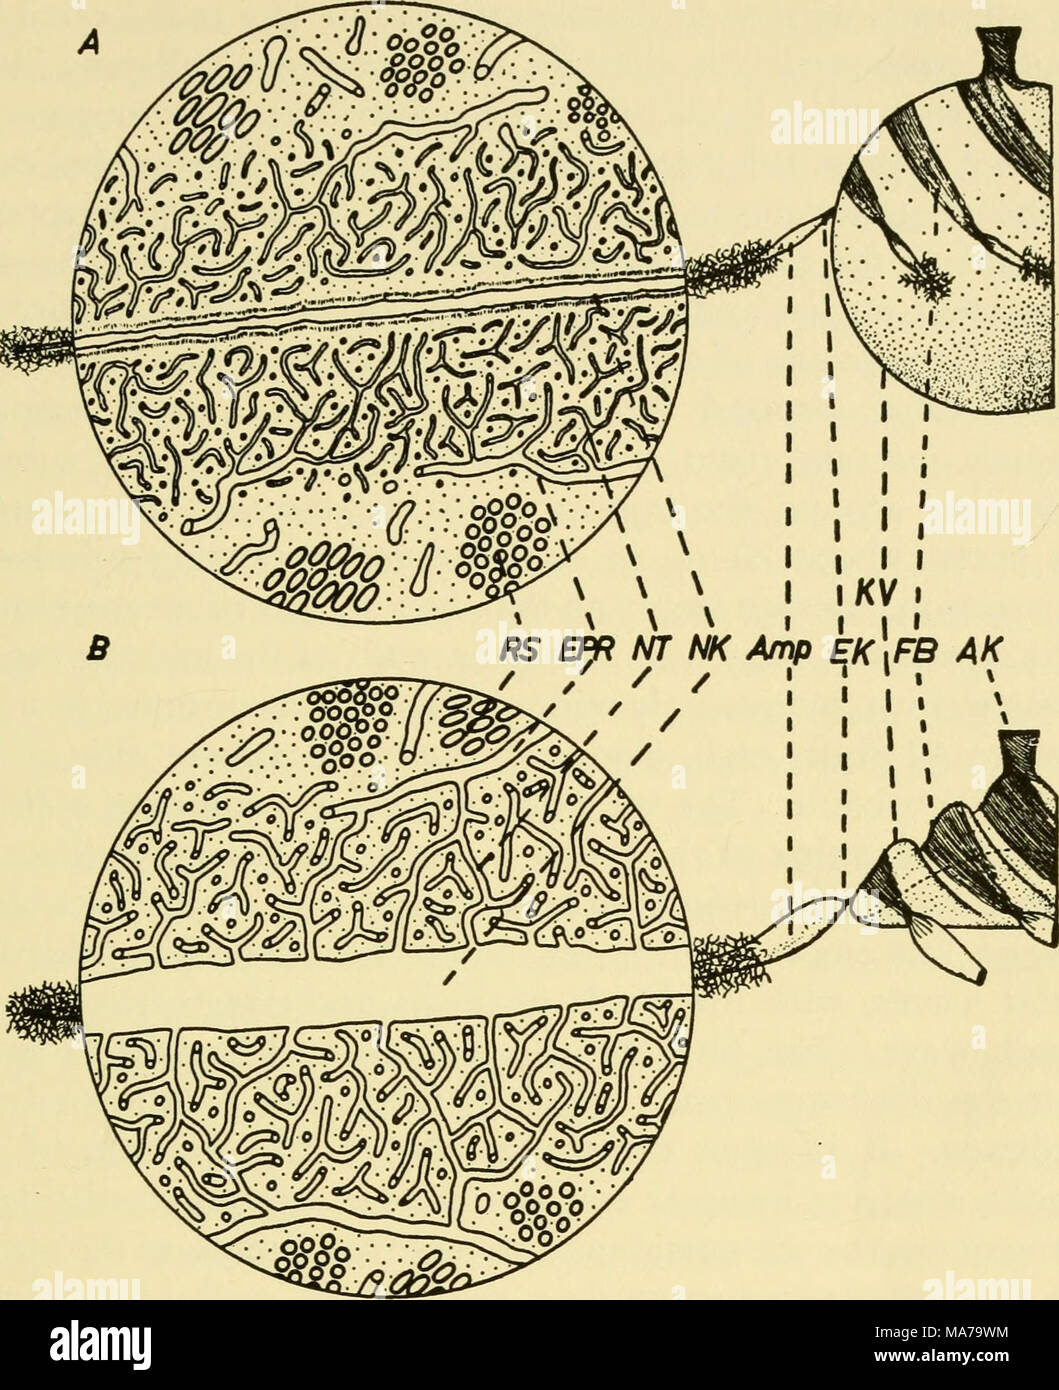 . Elettron-struttura microscopica di protozoi . Text-figura 2. Disegni schematici di il vacuolo contrattile apparecchiatura in paramecio mostrando vacuolo principale a destra e un canale radiale, con circolare allargata inset, a sinistra. Disegno in alto mostra il canale radiale nella sistole, vacuolo principale in diastole; abbassare il disegno mostra il canale radiale in diastole e principali vacuolo nella sistole. RS, cluster di tubuli membranosa; EPR, reticolo endoplasmatico, mostrando la continuità di questo sistema con NT, tubuli nephridial formando una spugna attorno a NK, nephridial canal; Amp, ampolla di canale radiale; EK, iniettore canal; KV, principale c Foto Stock